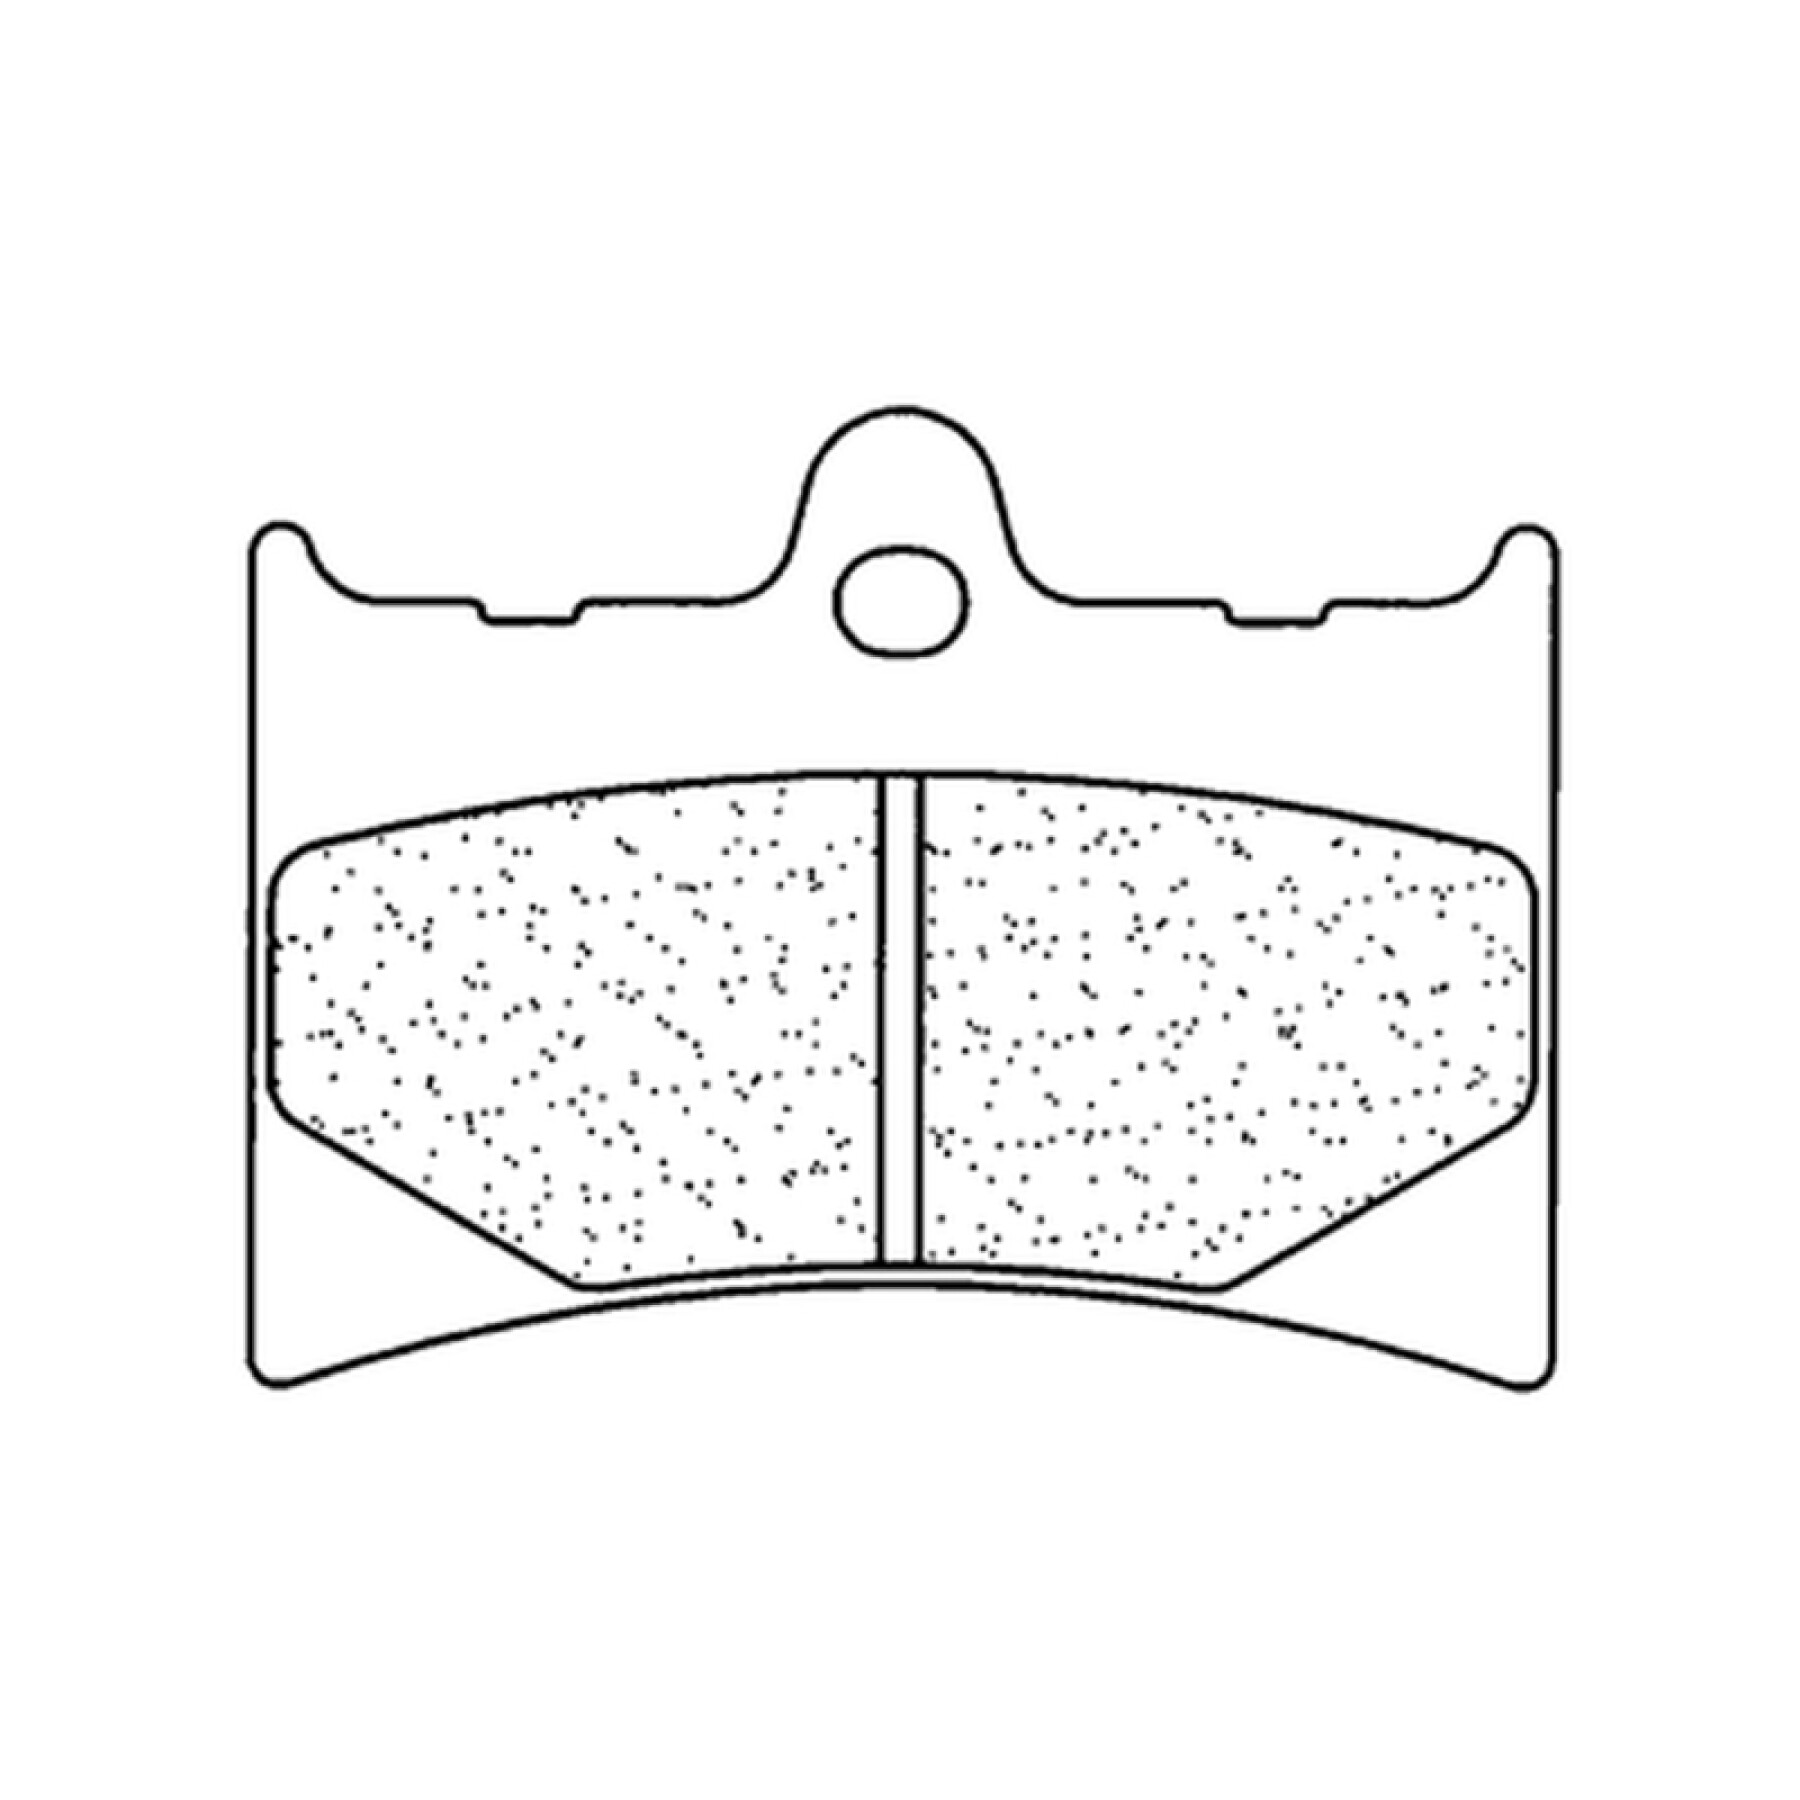 Plaquette de frein métal fritté CL Brakes Racing - 2398C60